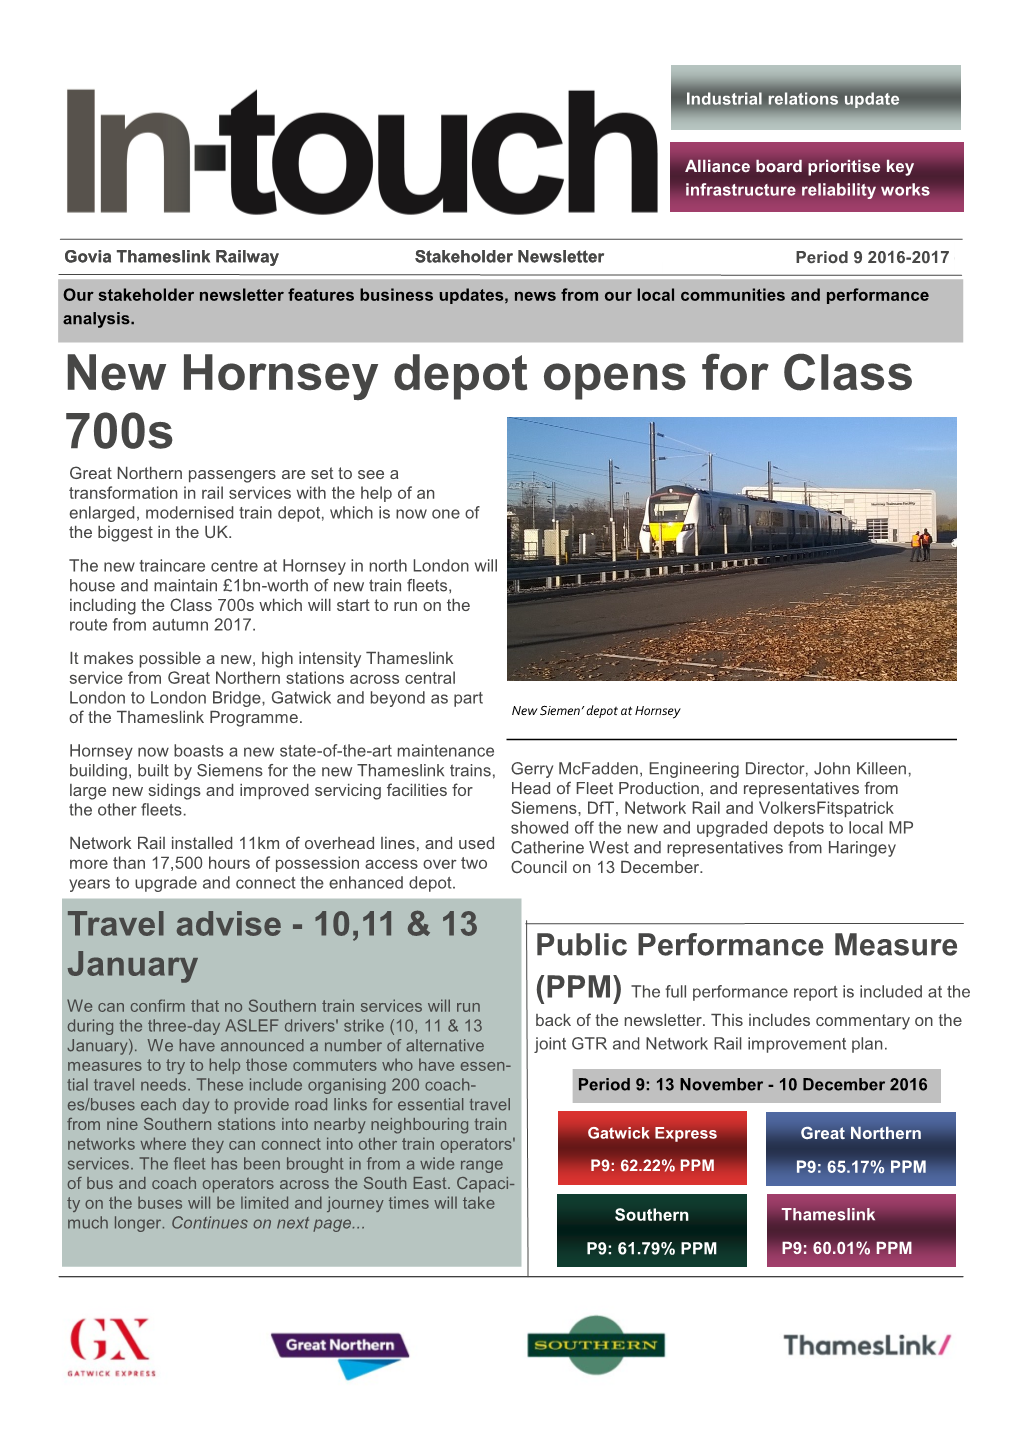 New Hornsey Depot Opens for Class 700S